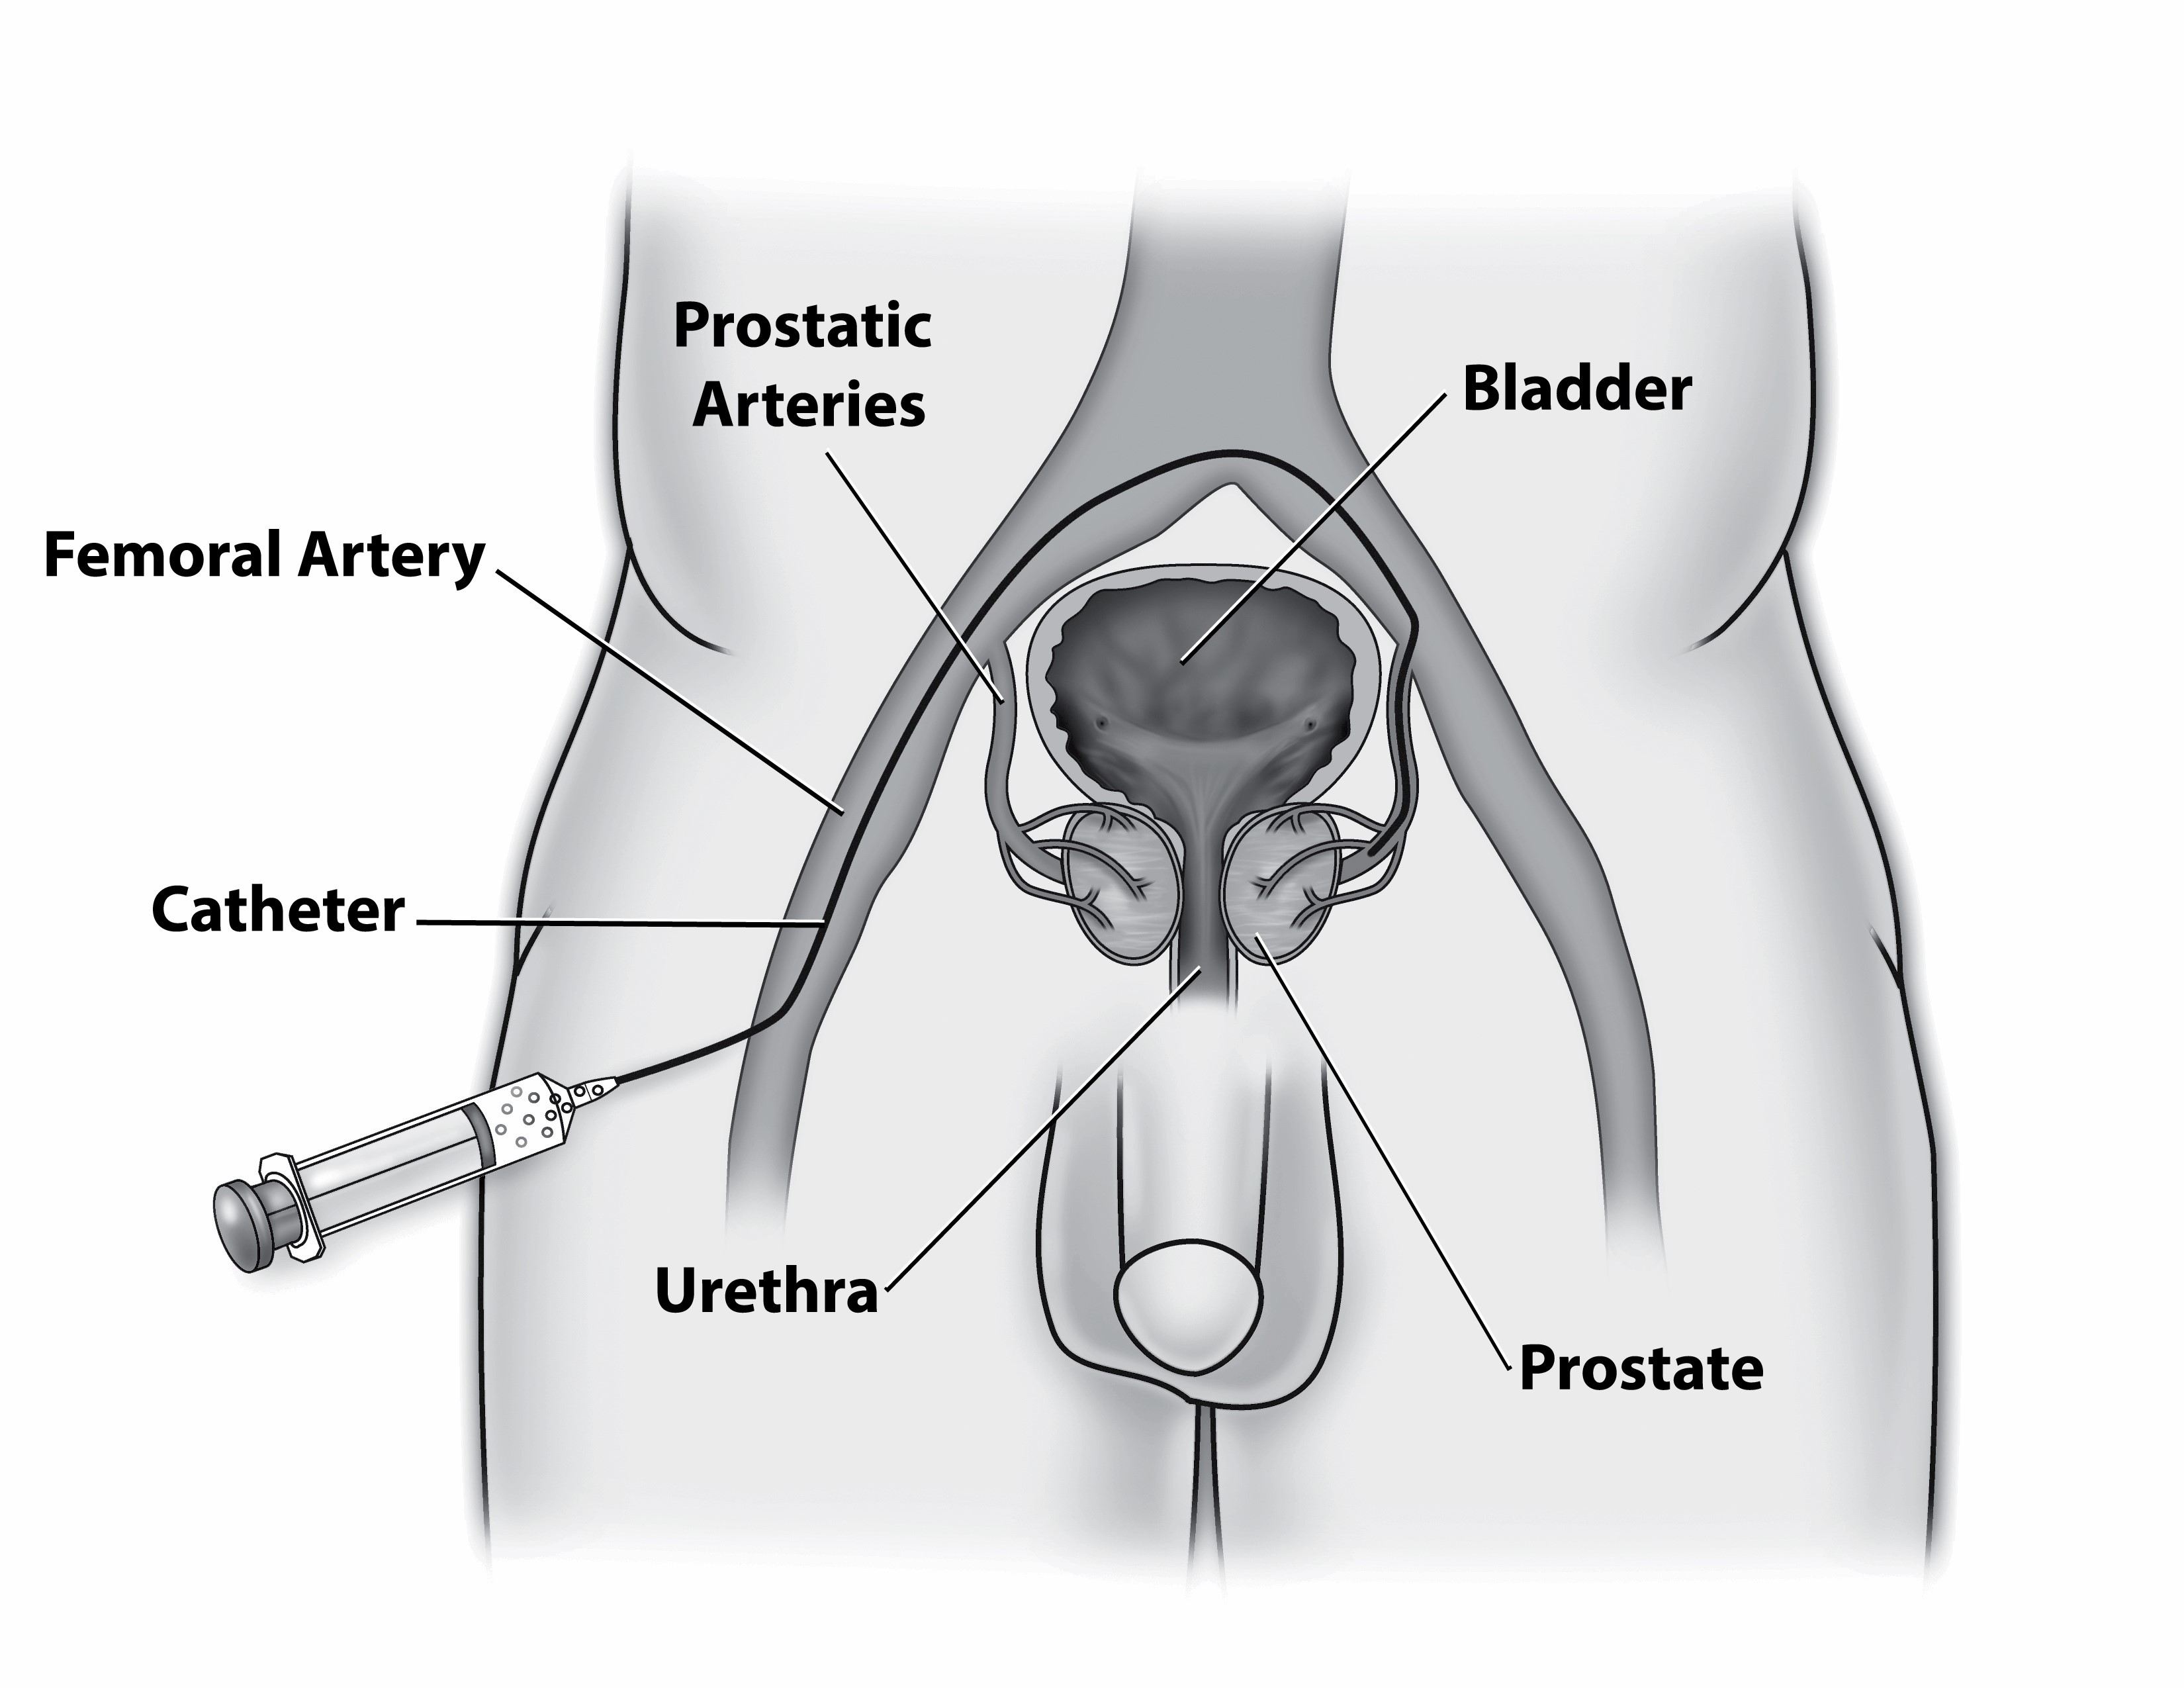 8058 Prostate Artery Embolization